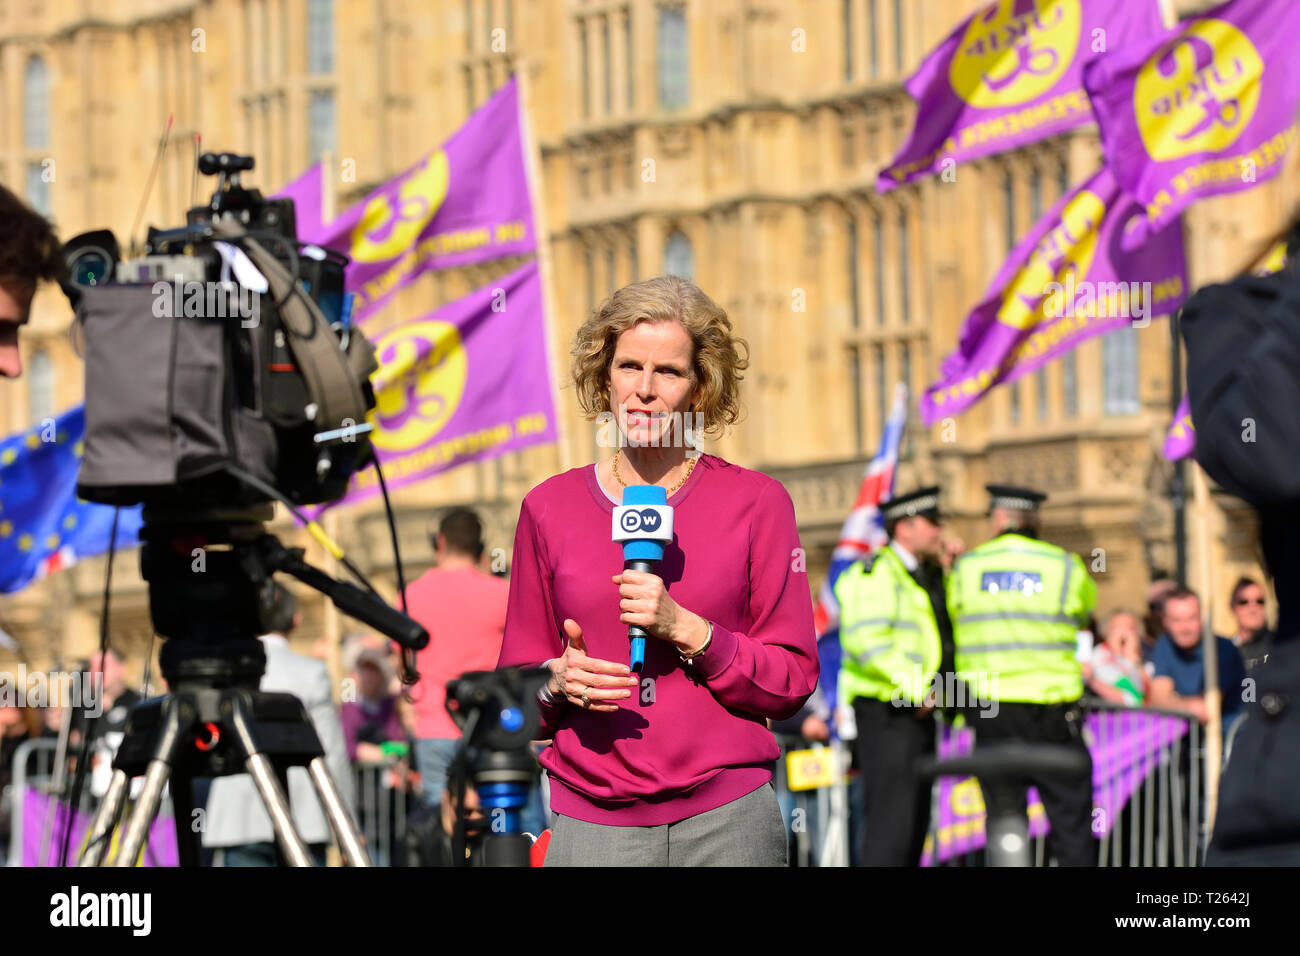 Birgit Maass - Deutsche Welle UK correspondent - reporting on Brexit from College Green, Westminster, UK. 29 March 2019 Stock Photo